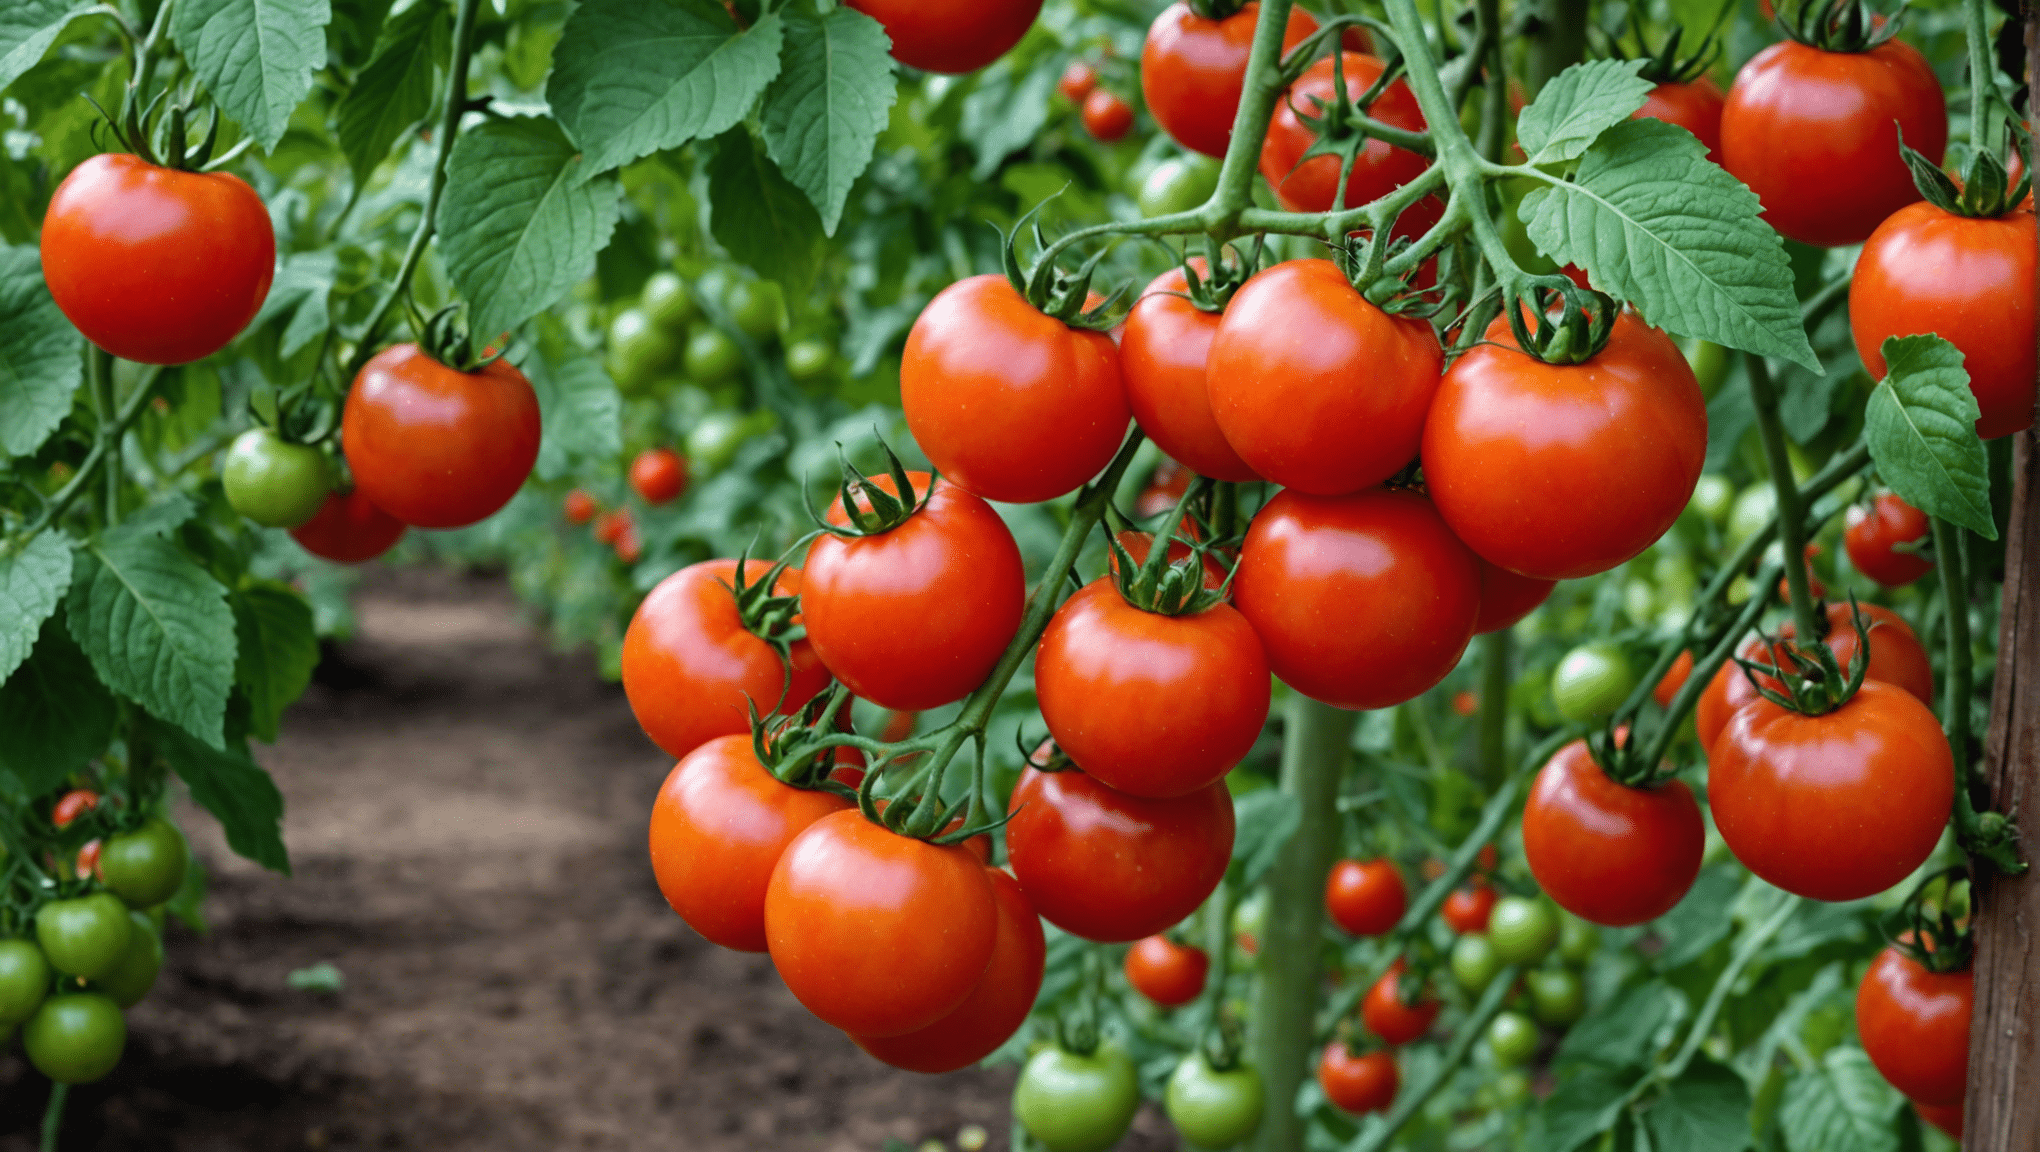 découvrez les 6 étapes incontournables pour une culture réussie de tomates-cerises et apprenez à éviter les erreurs grâce à ce guide complet !